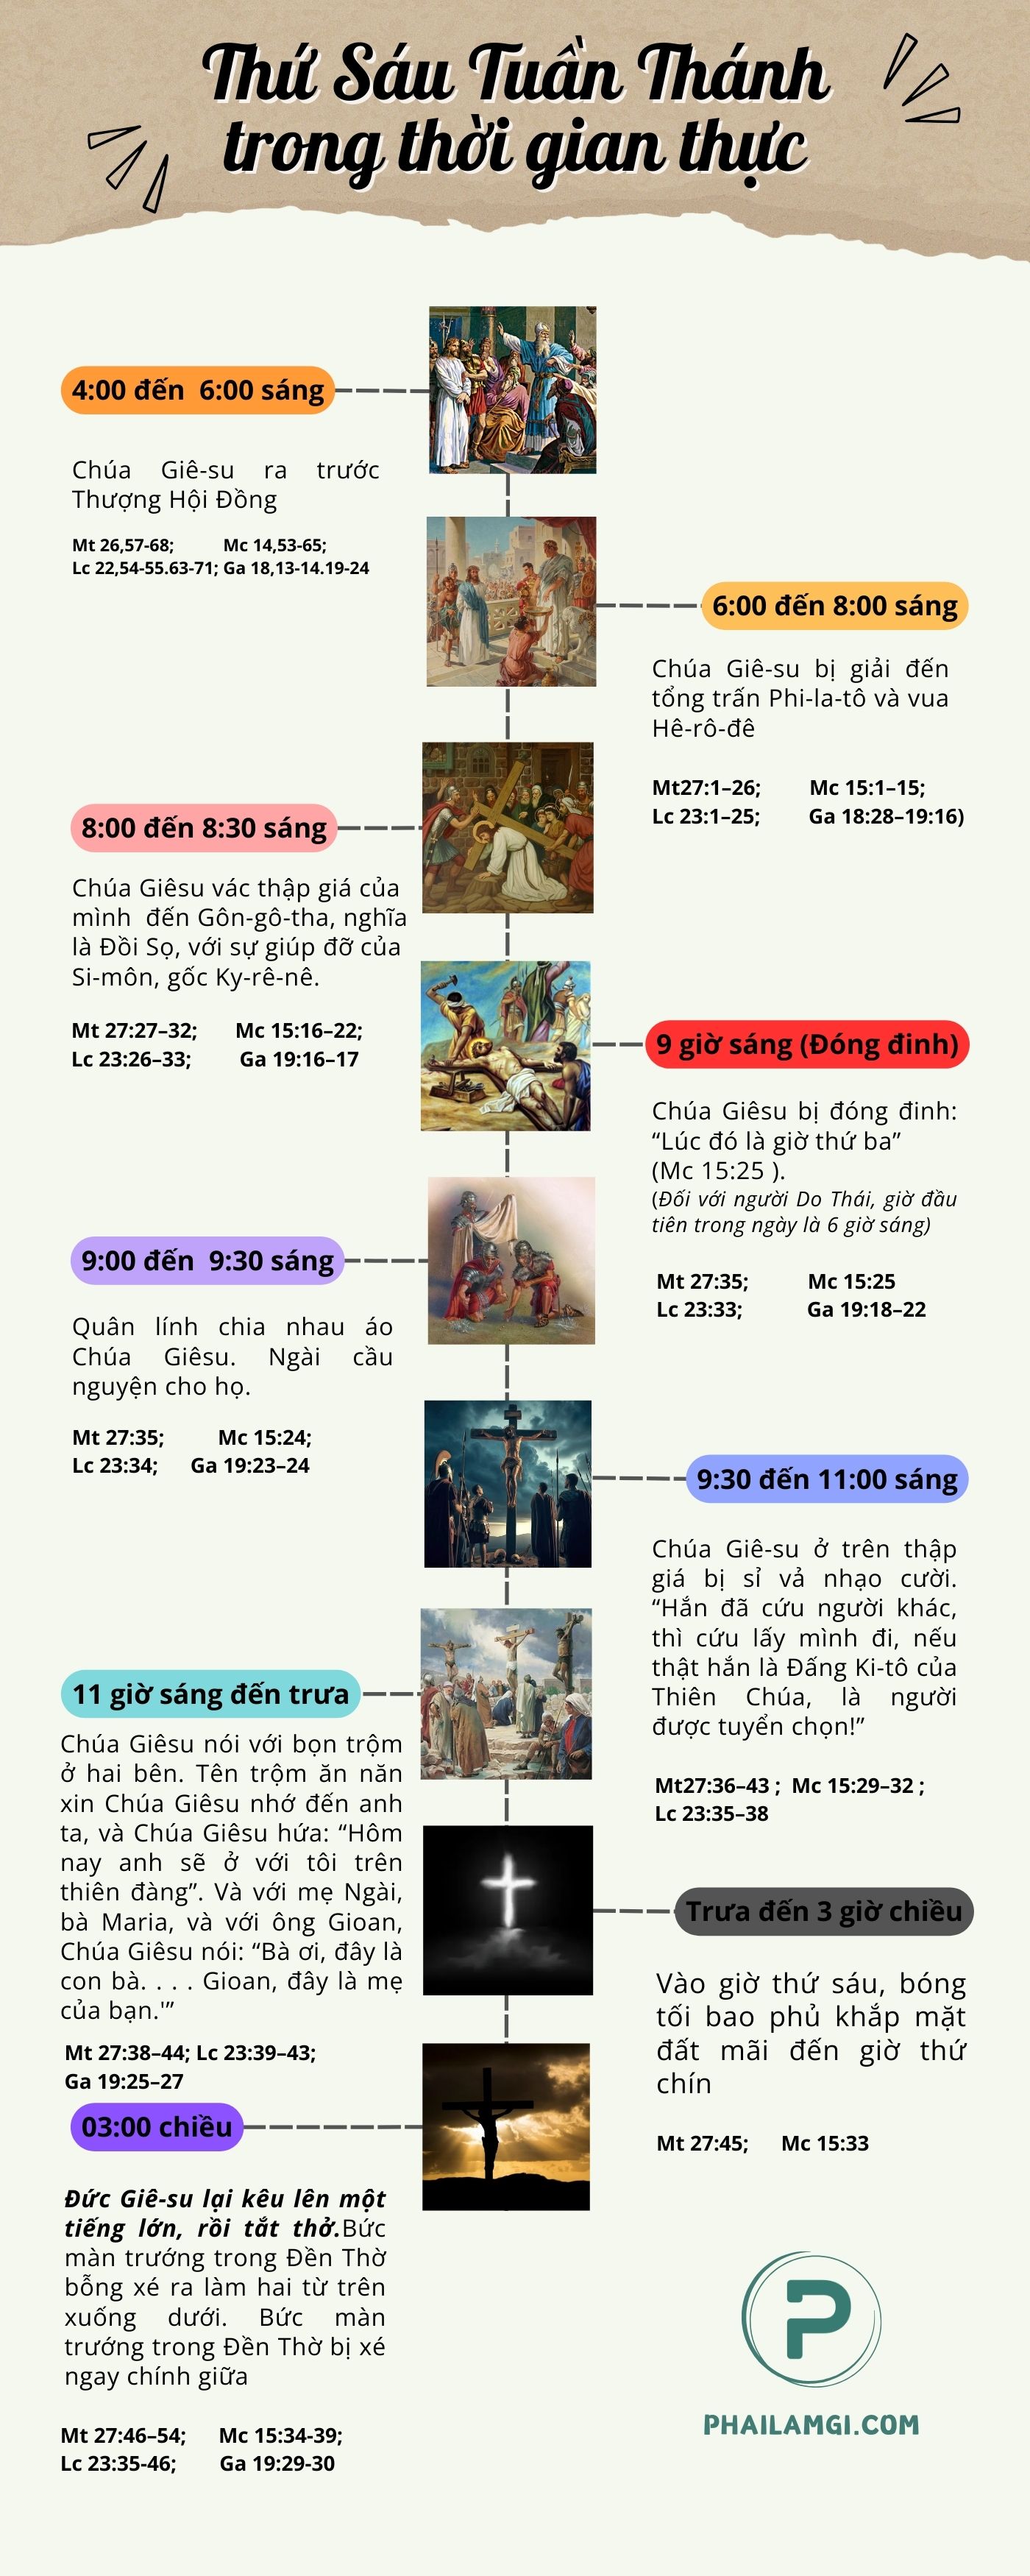 phailamgi_ thứ sáu tuần thánh trong thời gian thực_infographic.jpg